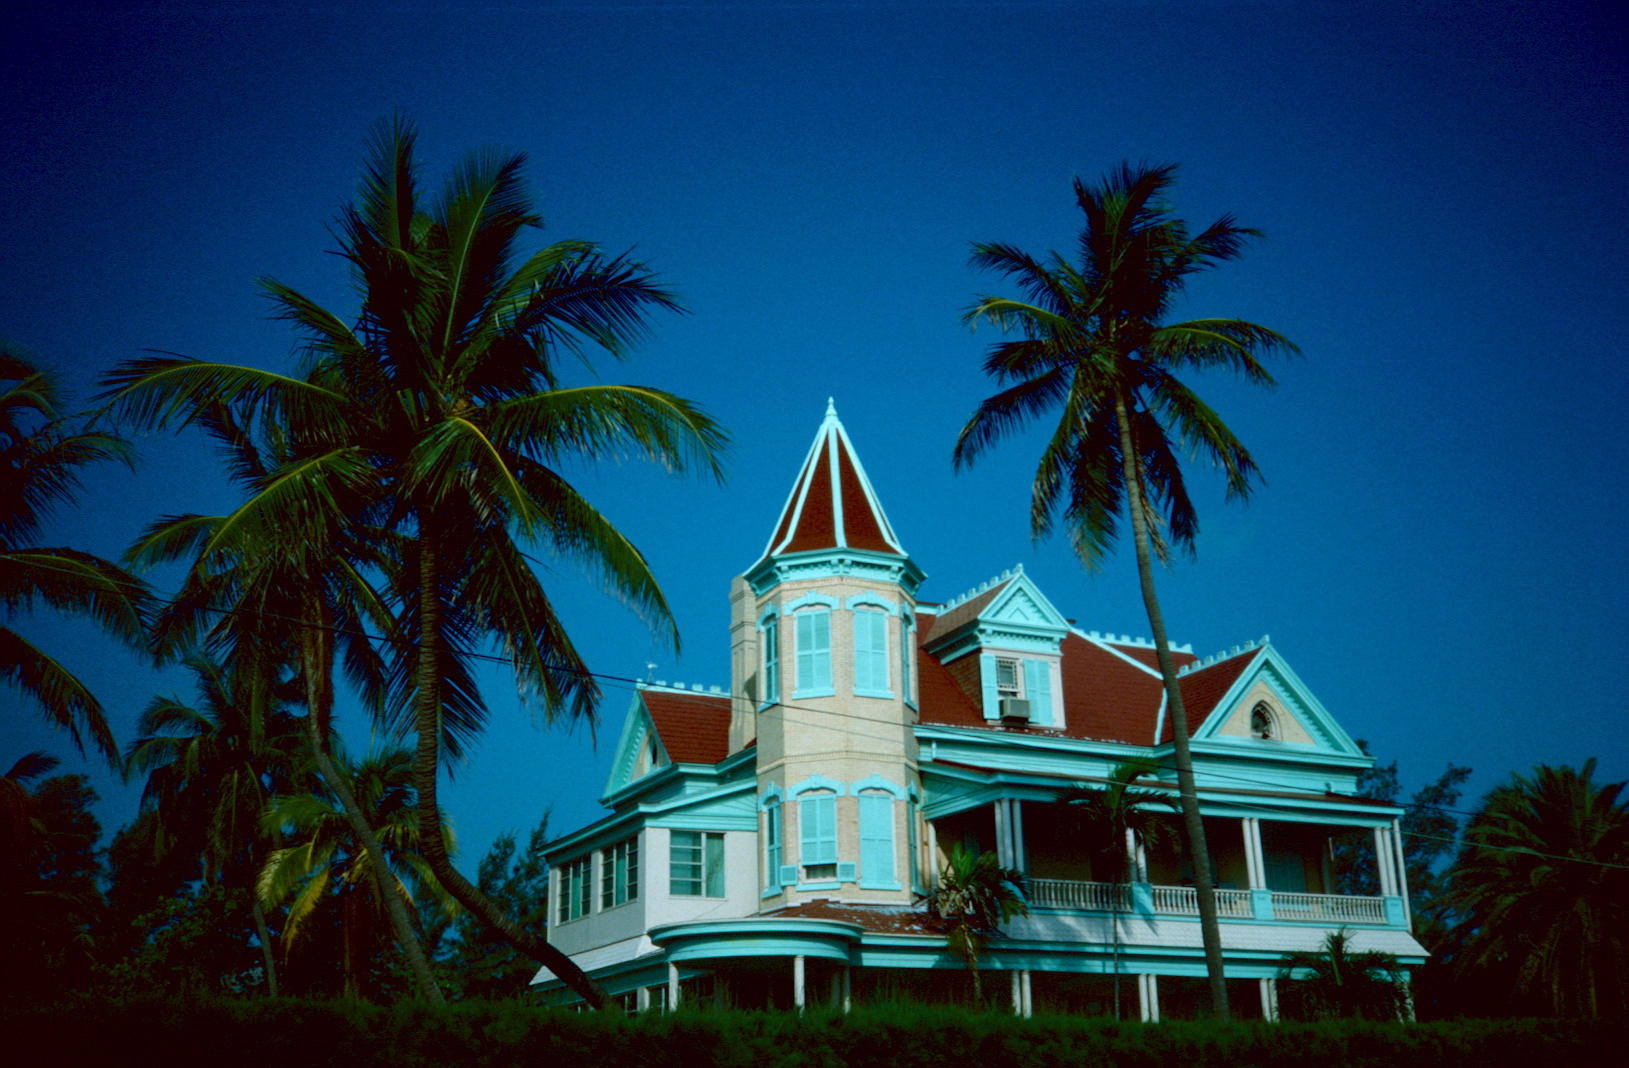 Key West, FL - 1989 